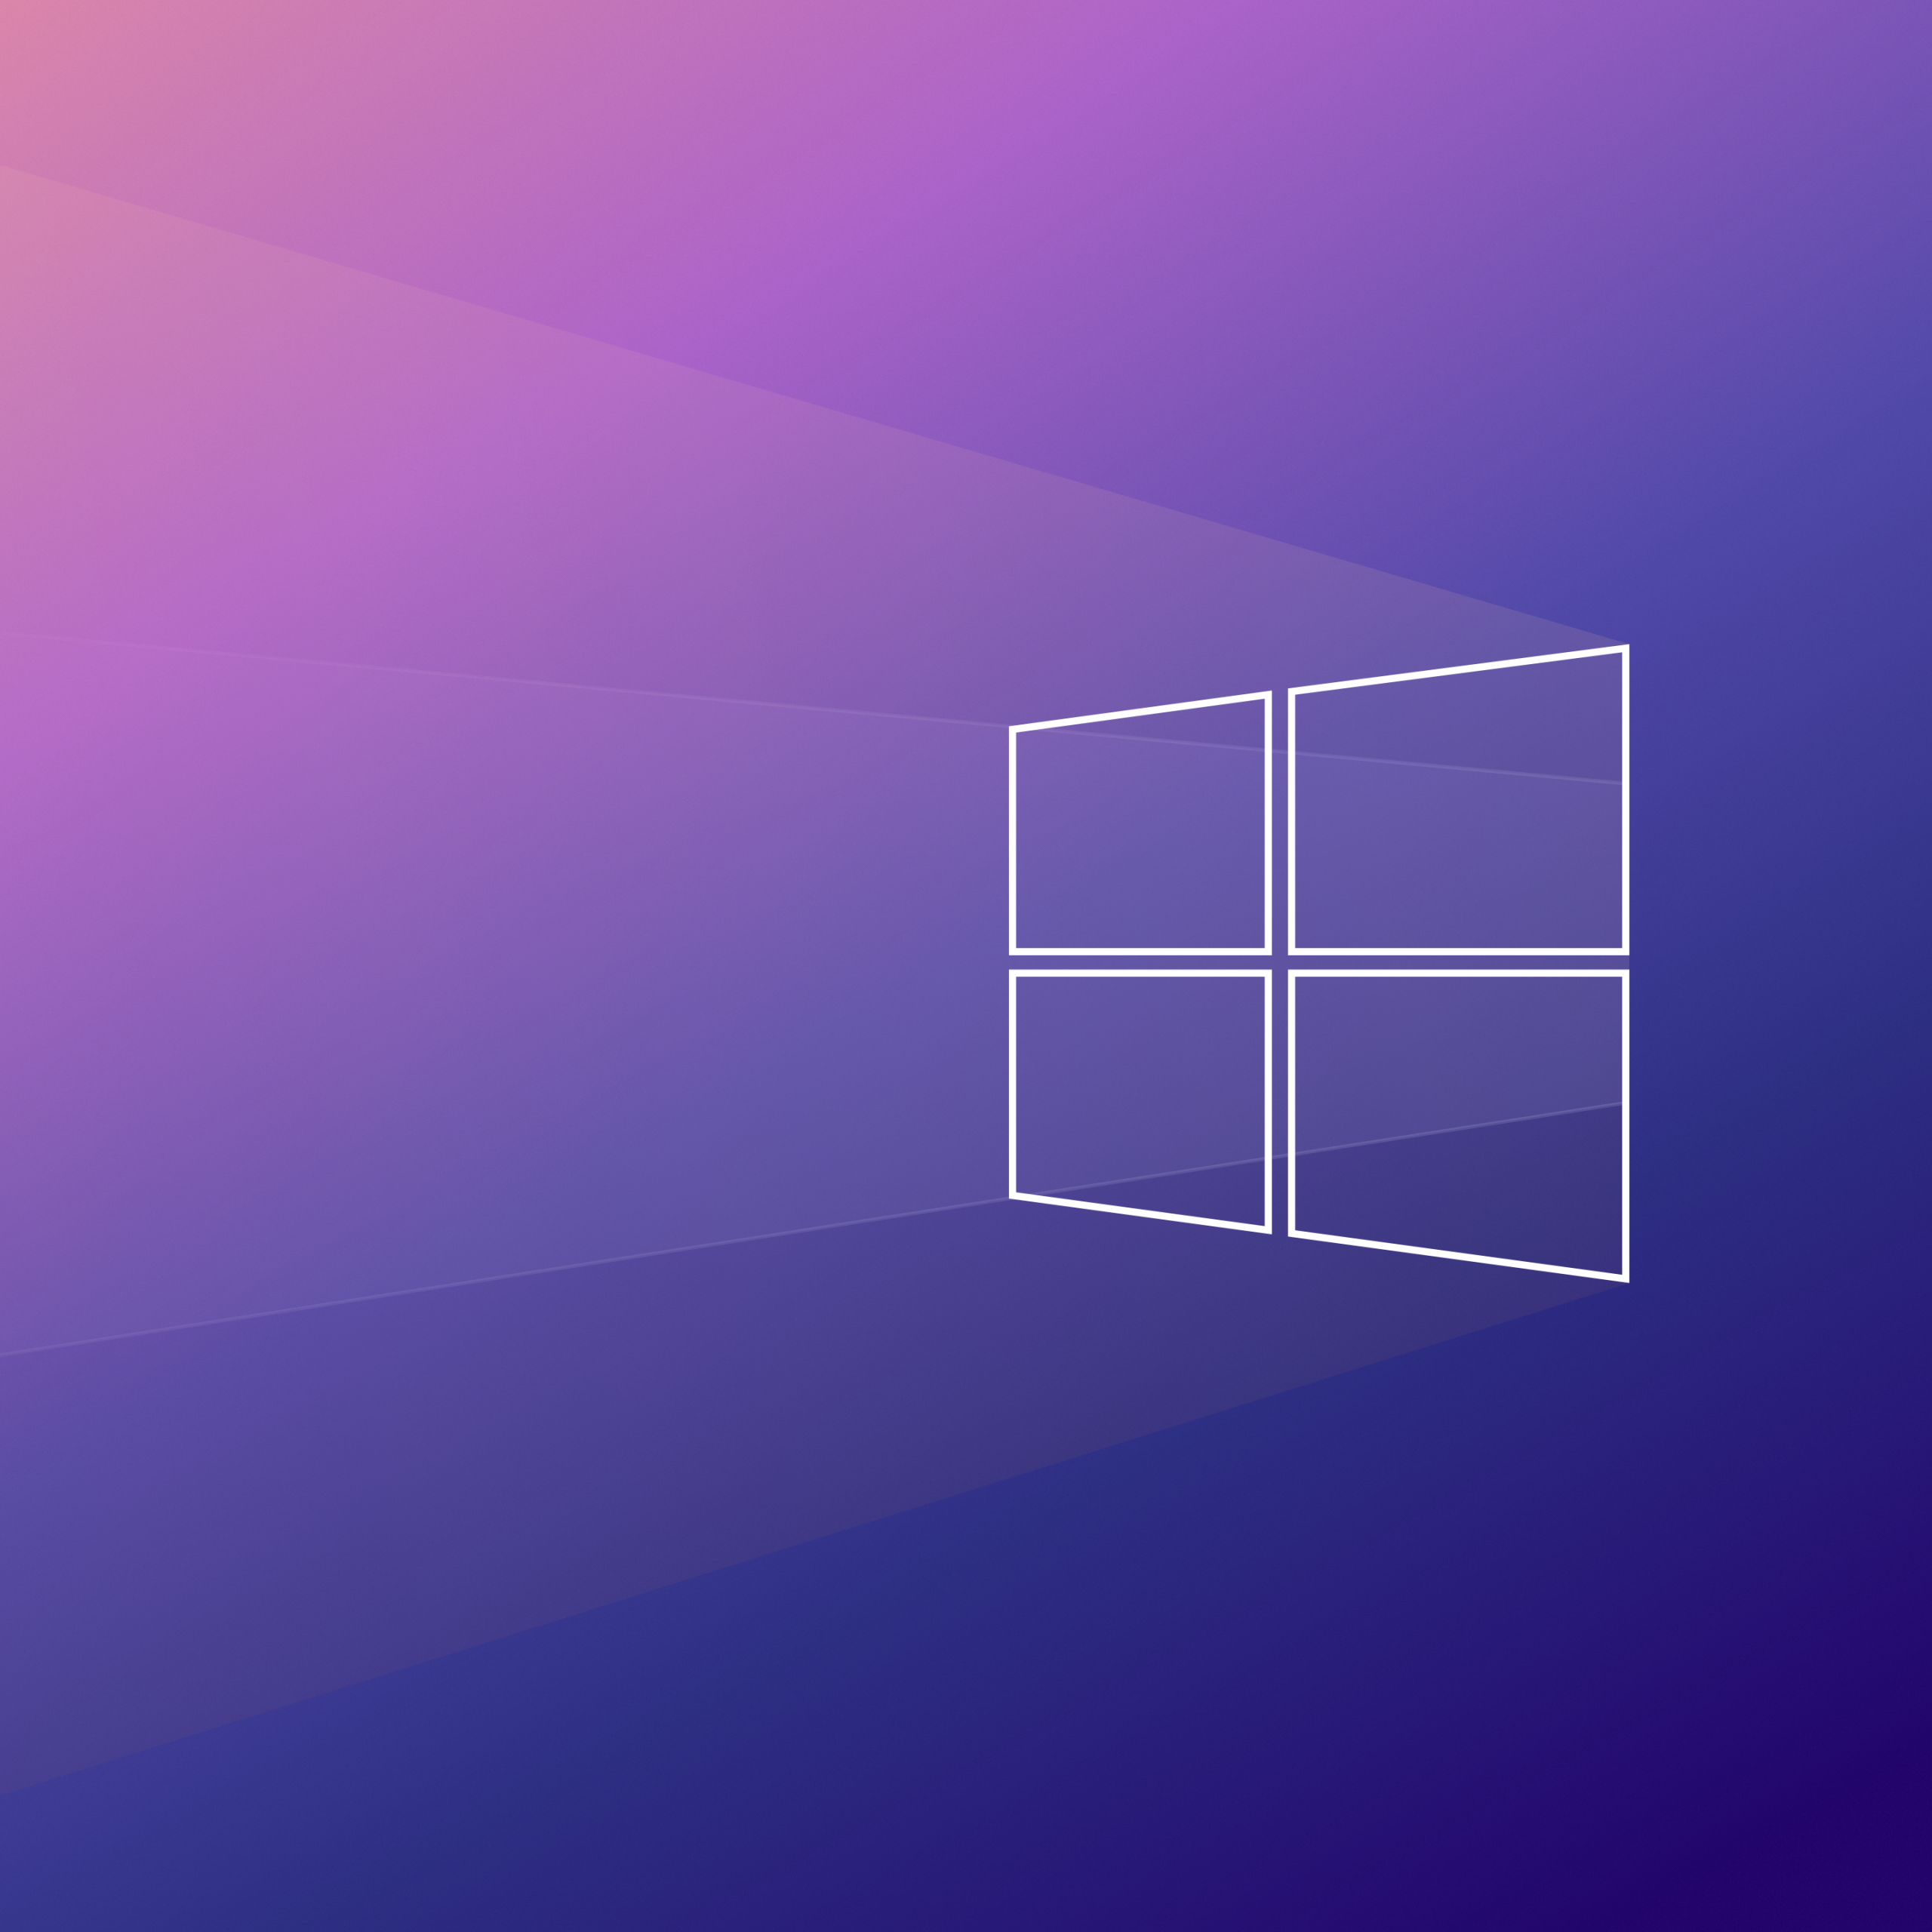 Bạn là một fan của công nghệ? Bạn muốn có một hình nền Windows 10 Gradient 4K công nghệ để trang trí cho chiếc máy tính của mình? Vậy thì hãy để chúng tôi giới thiệu đến bạn bộ sưu tập hình nền đẹp và sáng tạo của chúng tôi. Hãy cùng thưởng thức mọi chi tiết kỹ thuật và tinh tế của hình ảnh này.